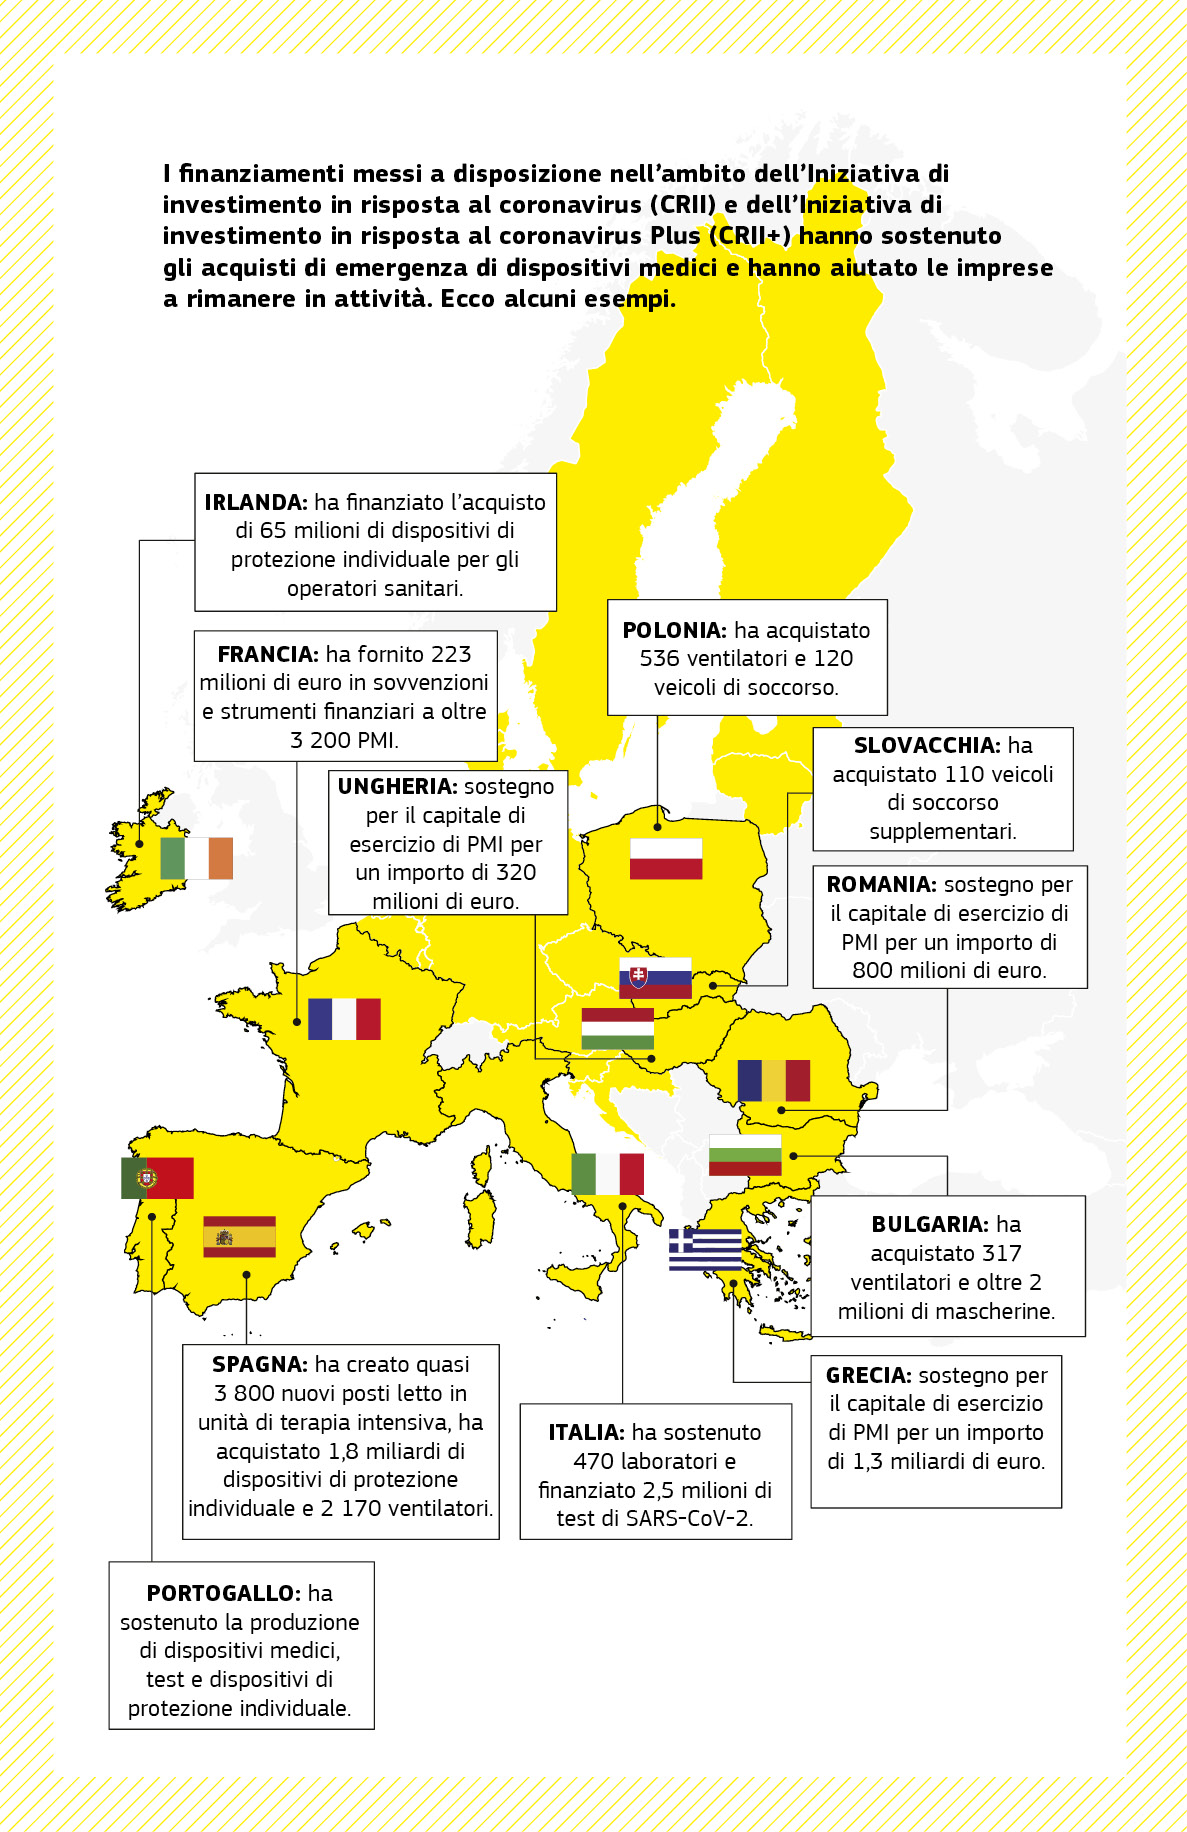 Una cartina che sintetizza una serie di progetti di sostegno nel contesto della pandemia finanziati dall’Iniziativa di investimento in risposta al coronavirus e dall’Iniziativa di investimento in risposta al coronavirus Plus in diversi Stati membri dell’UE.